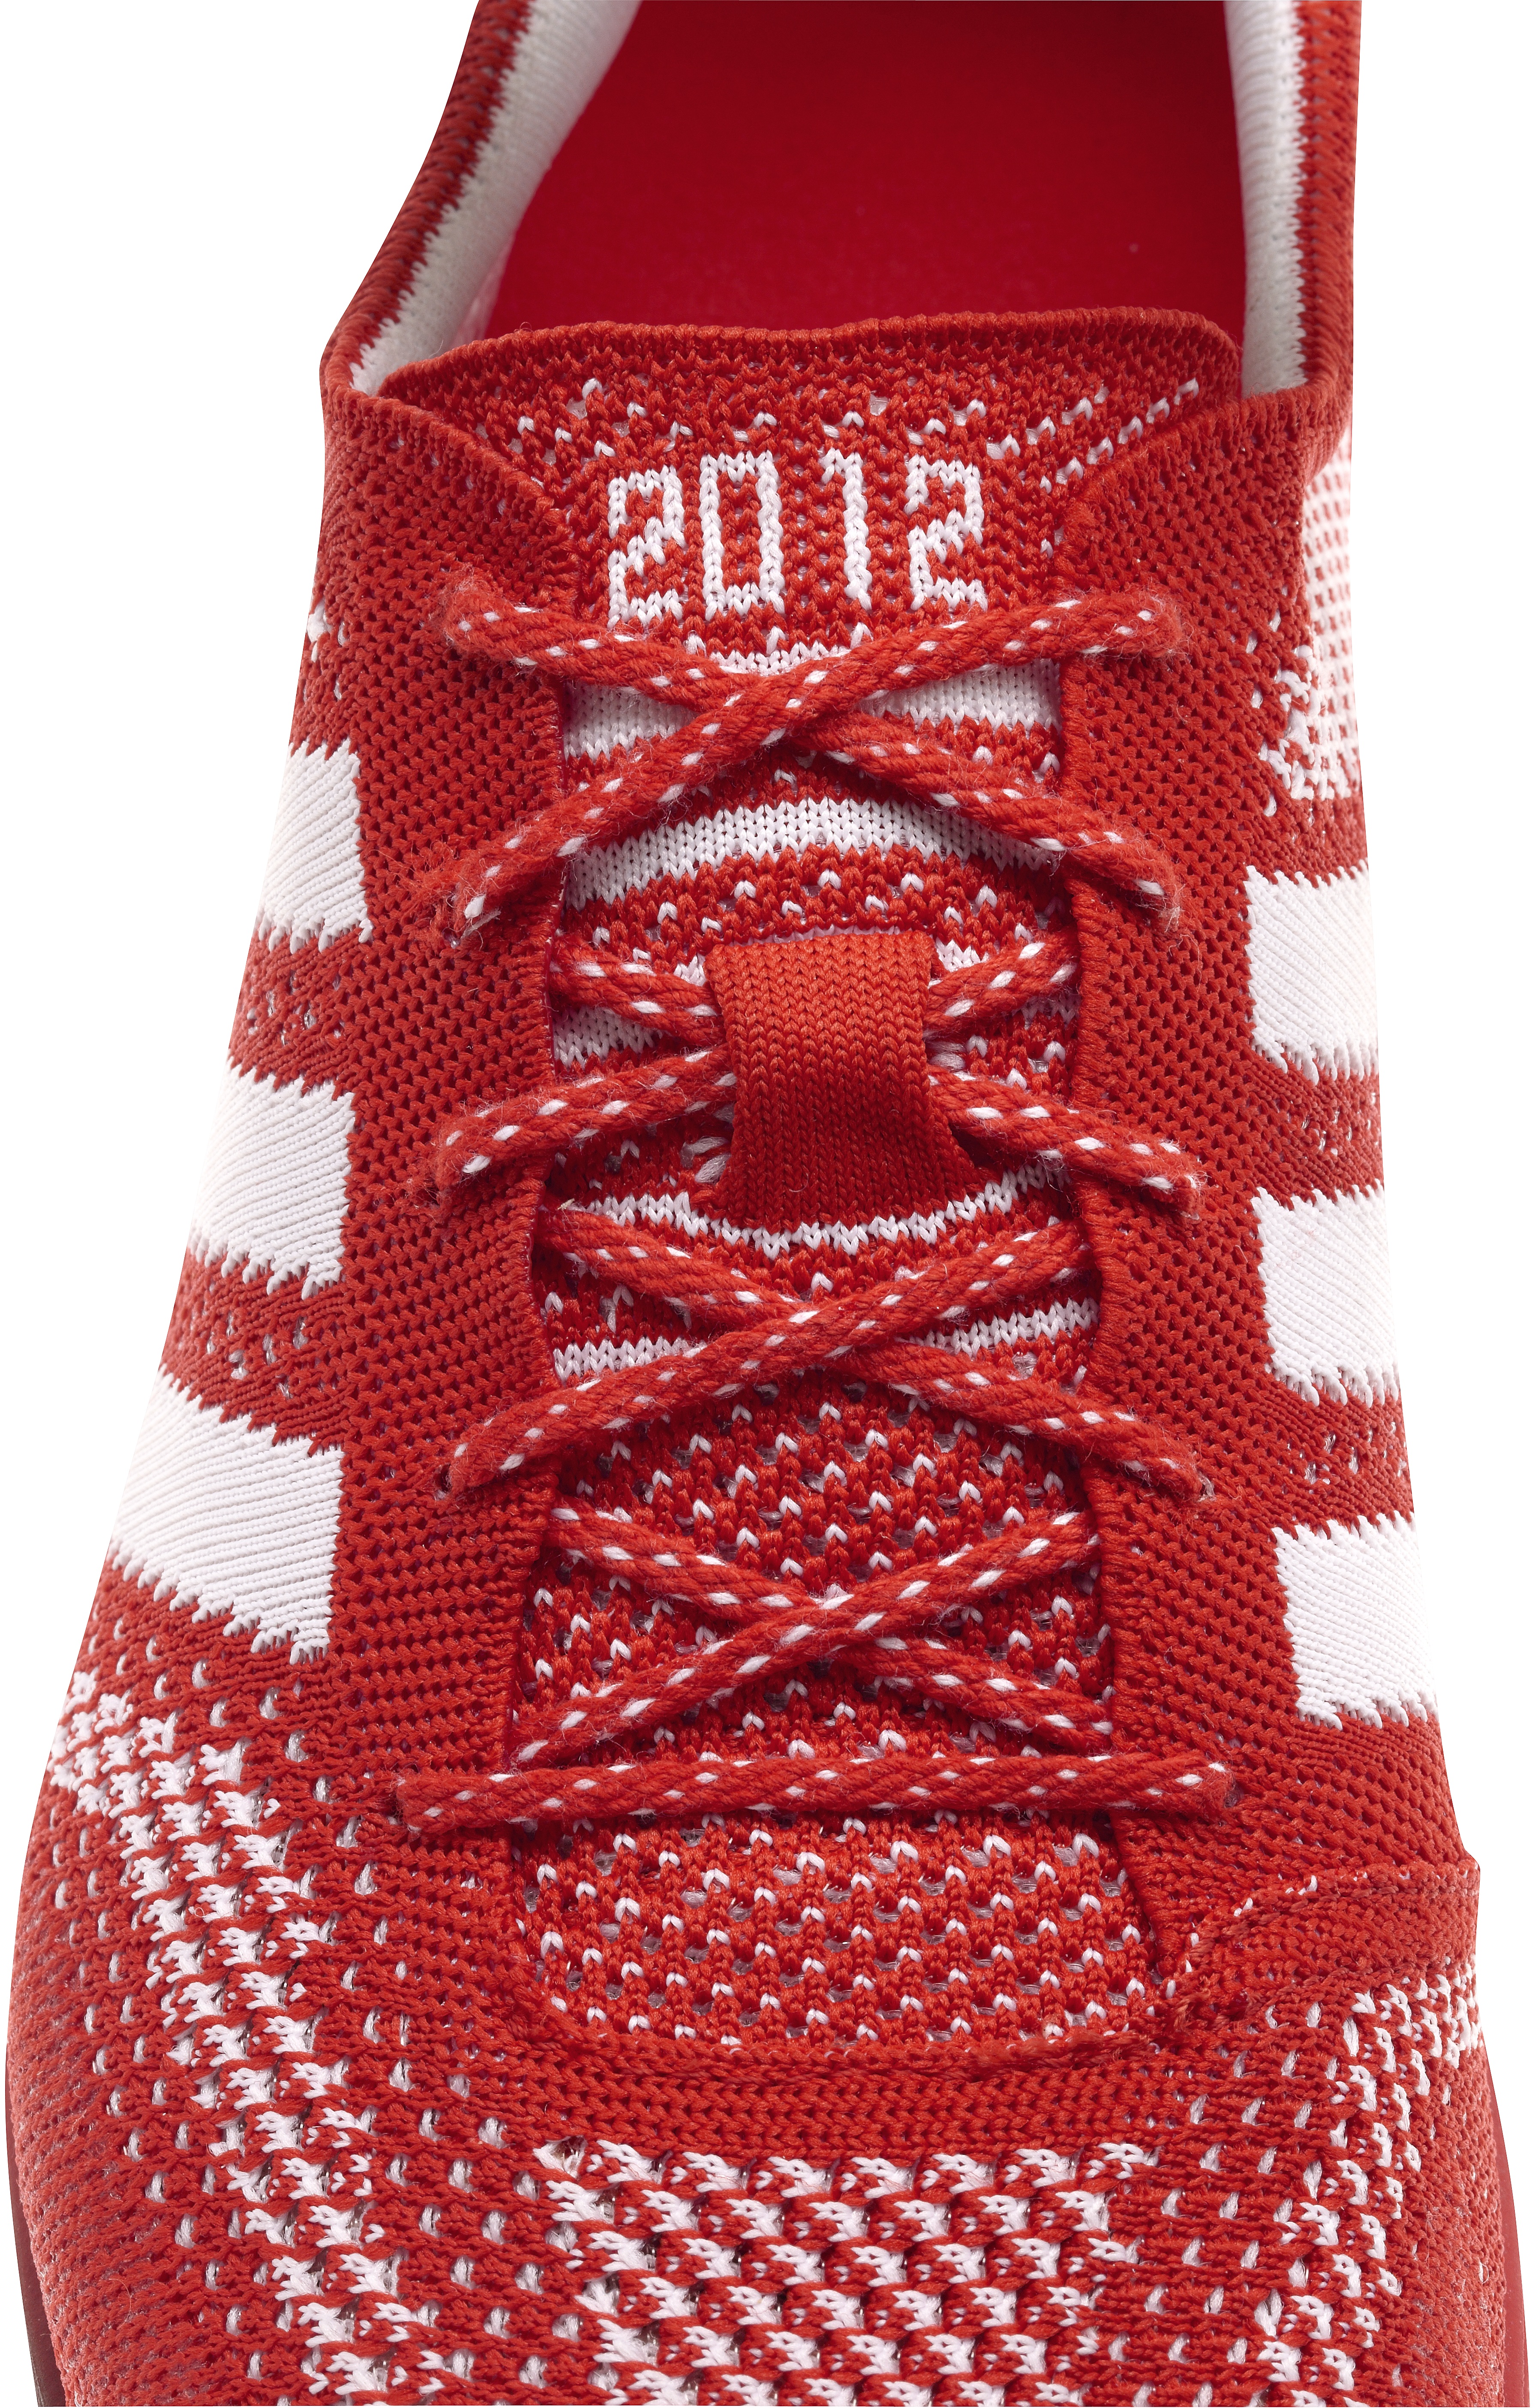 adidas adizero primeknit olympics running shoes